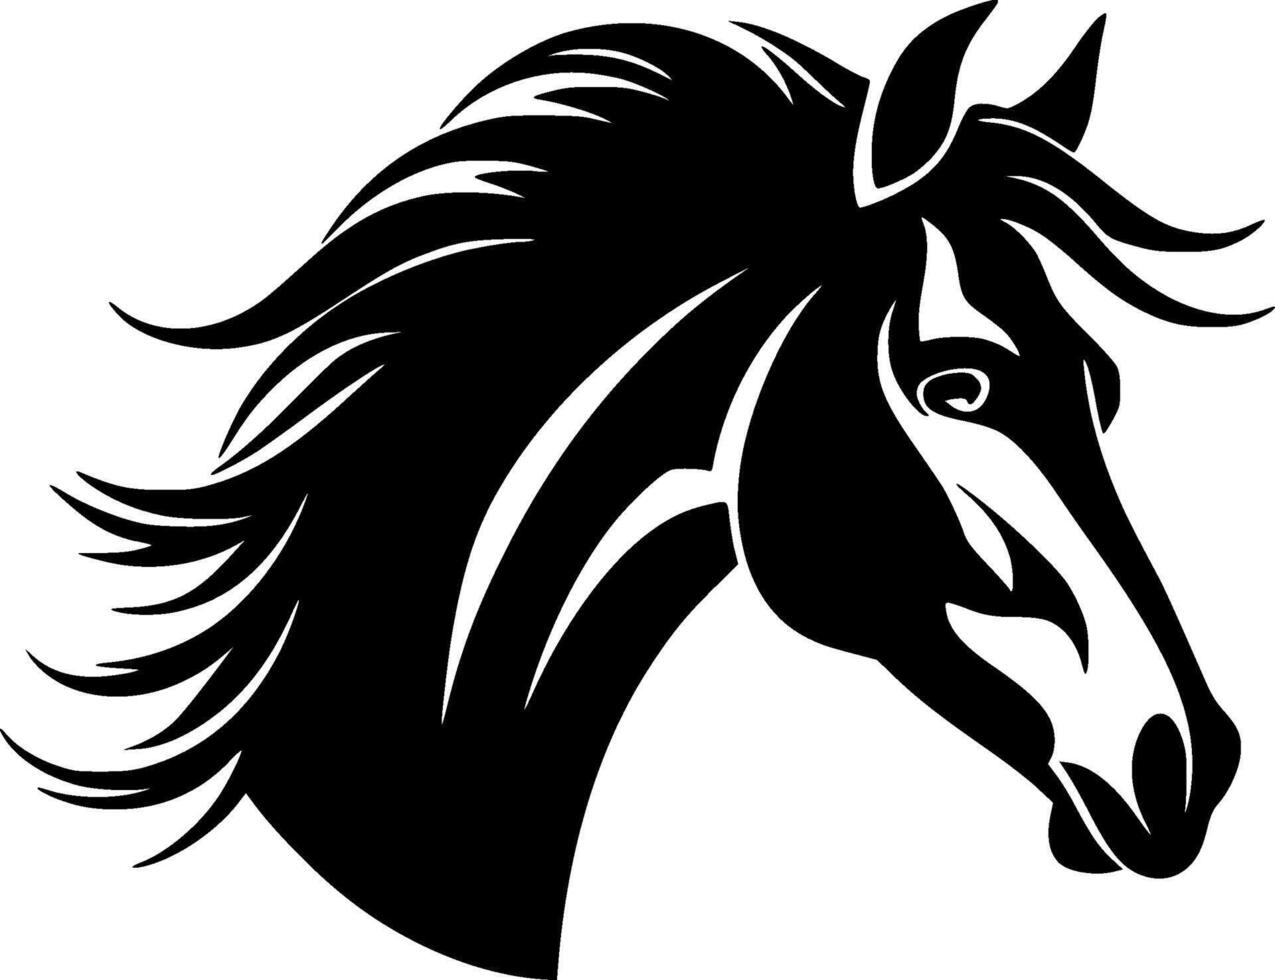 häst - hög kvalitet vektor logotyp - vektor illustration idealisk för t-shirt grafisk